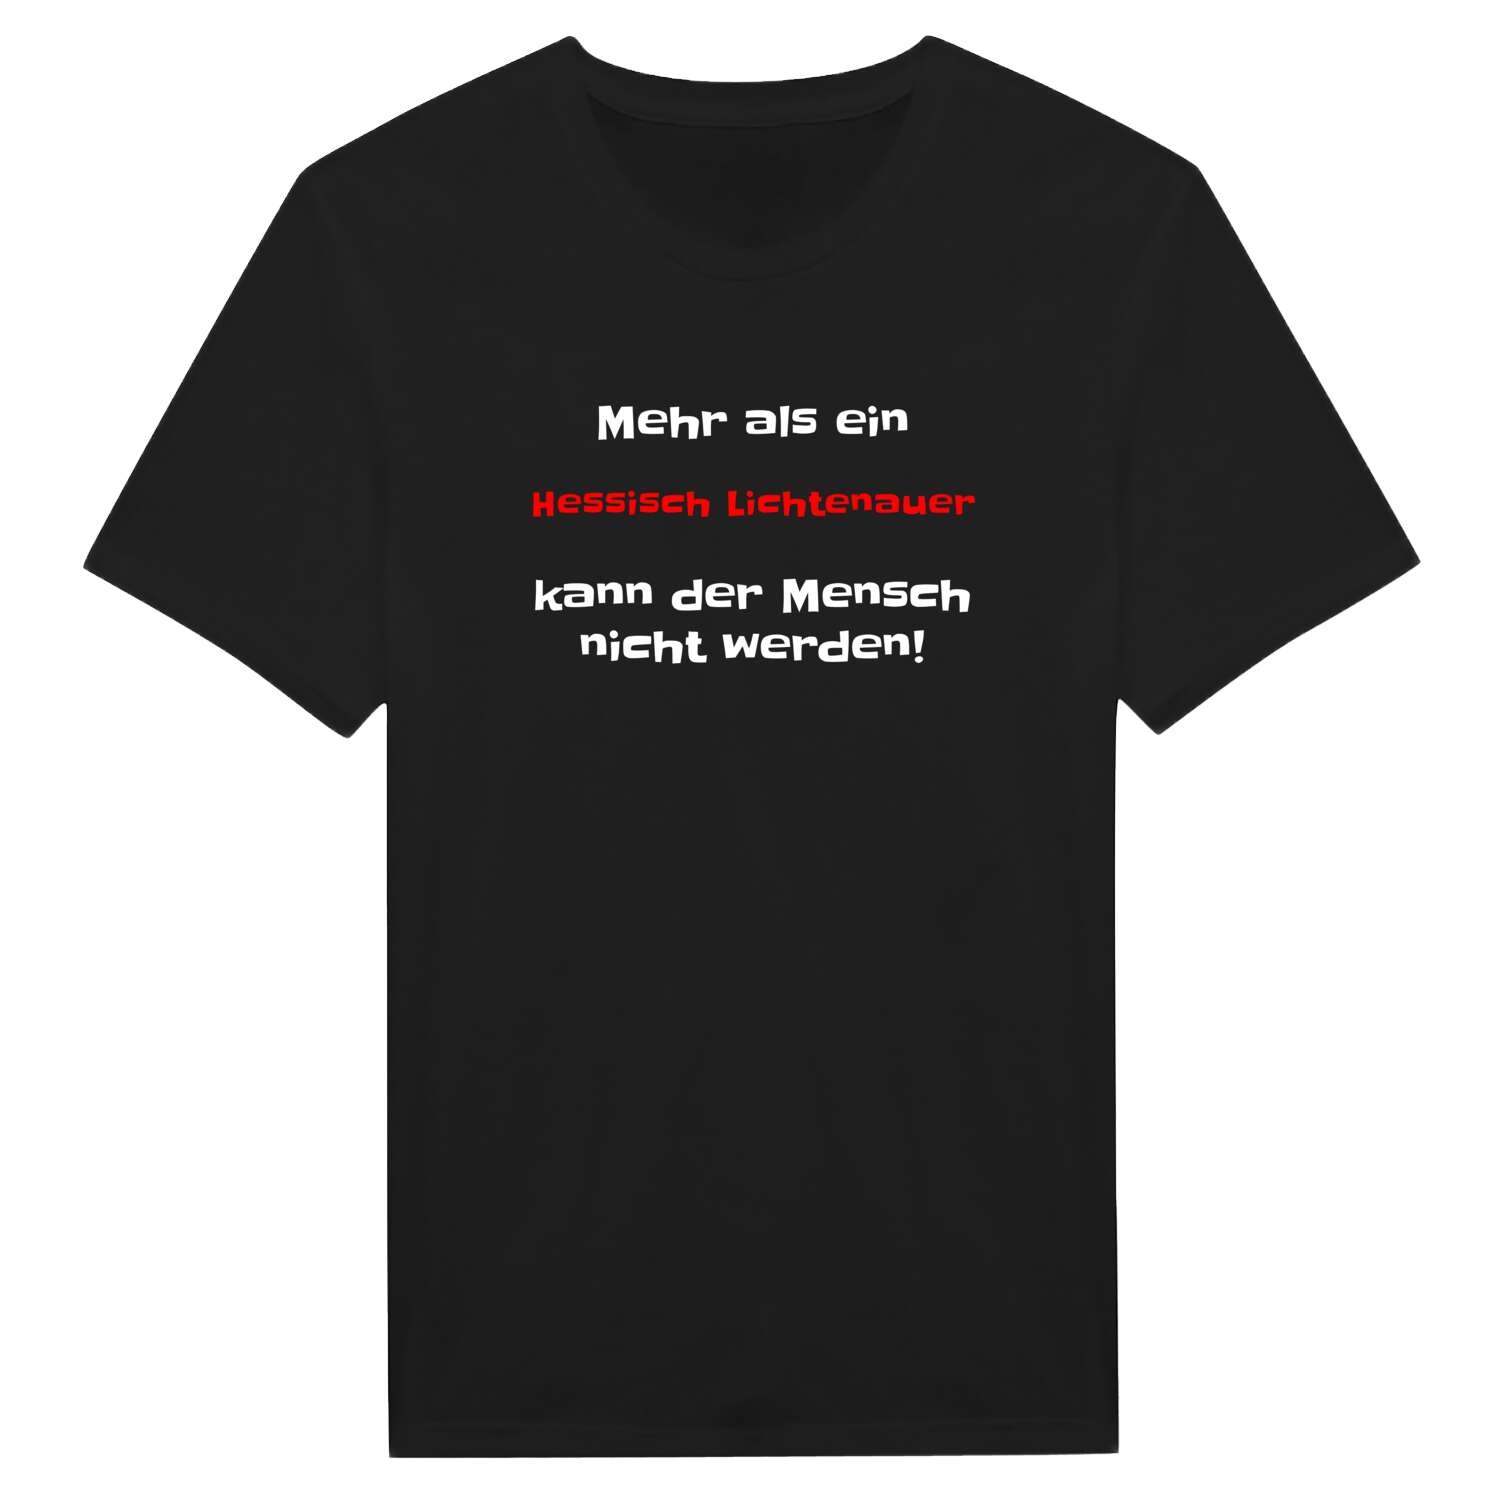 Hessisch Lichtenau T-Shirt »Mehr als ein«